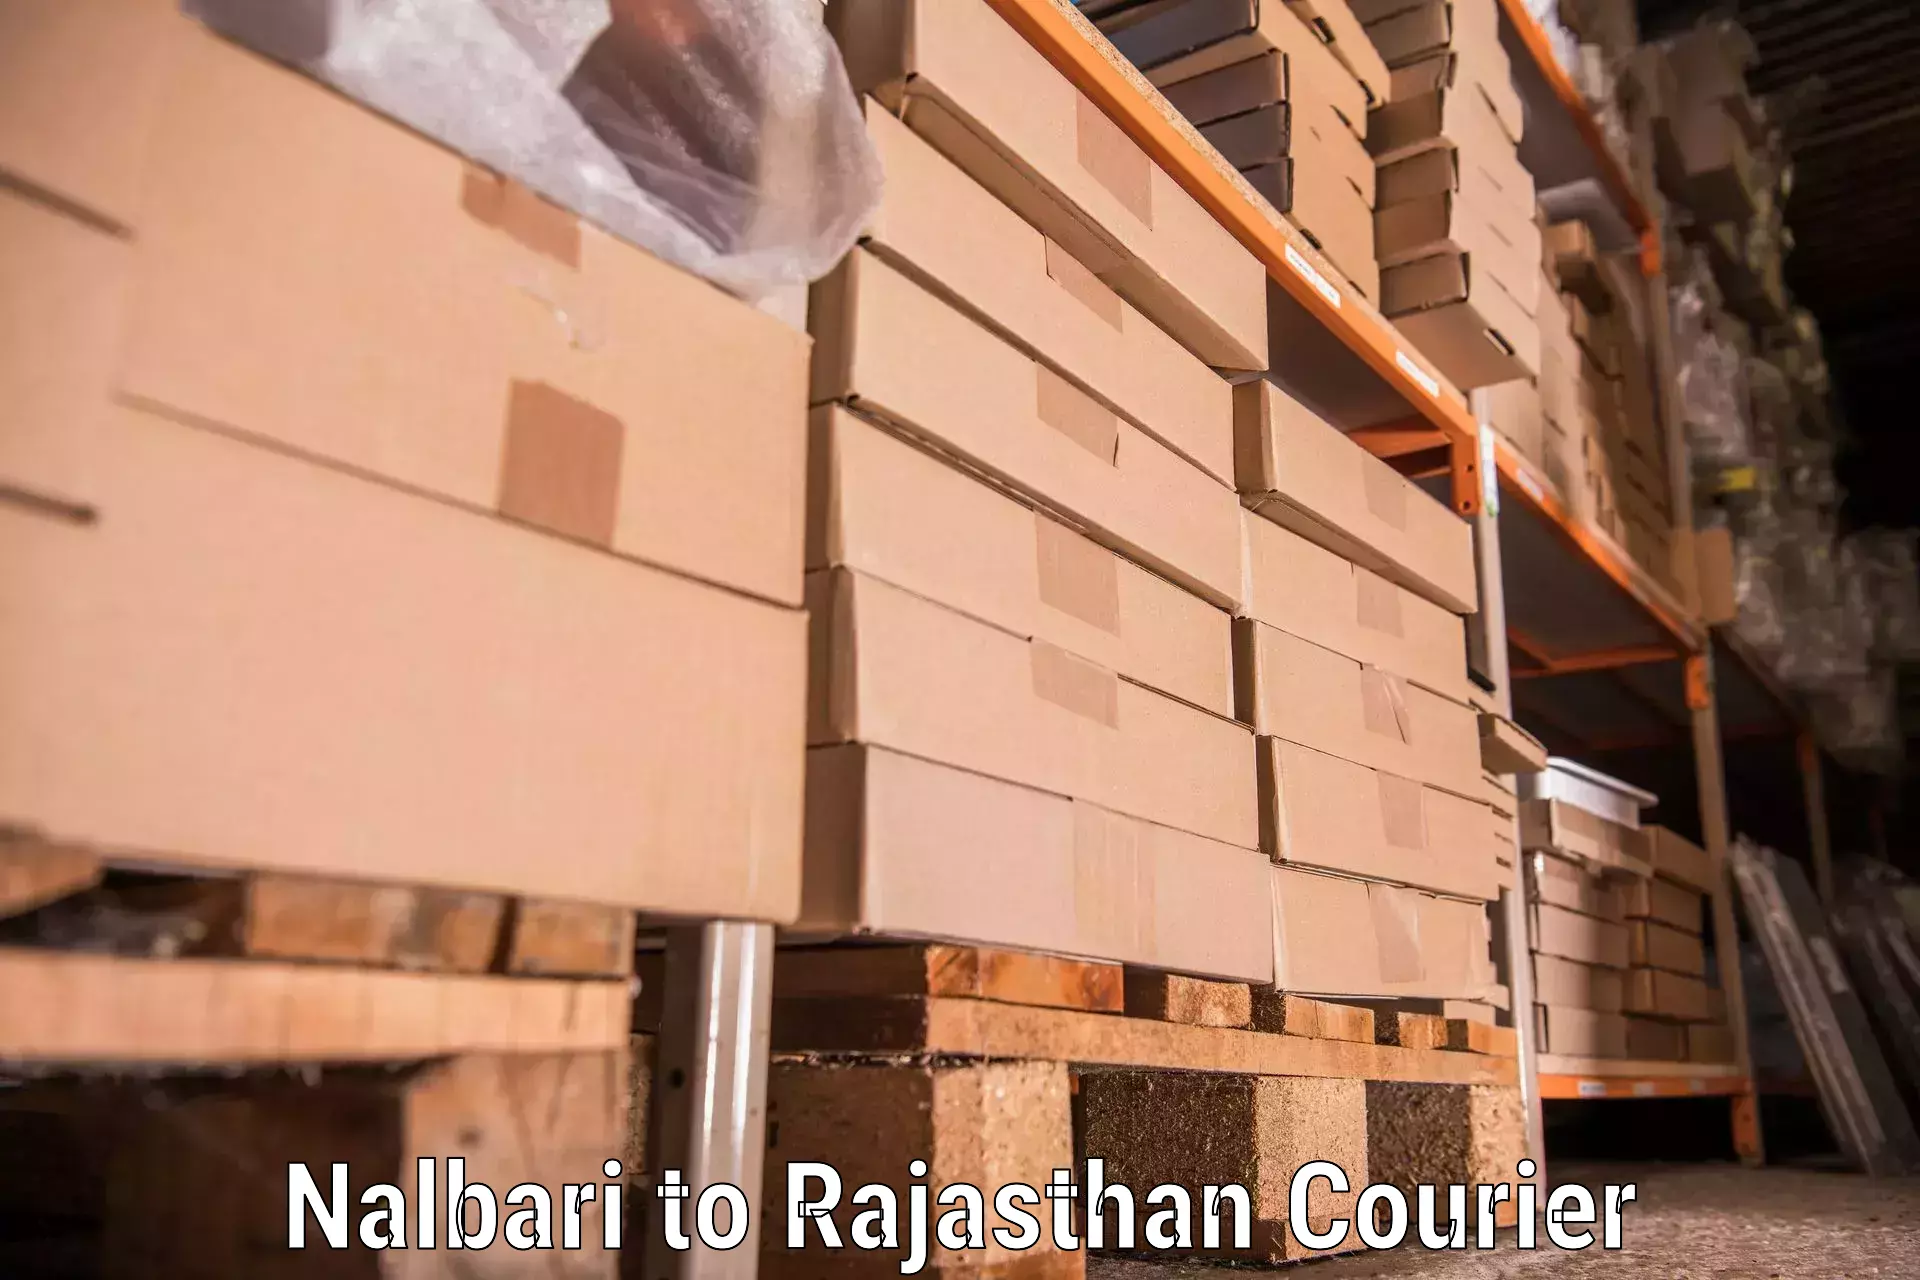 Dependable household movers Nalbari to Banar